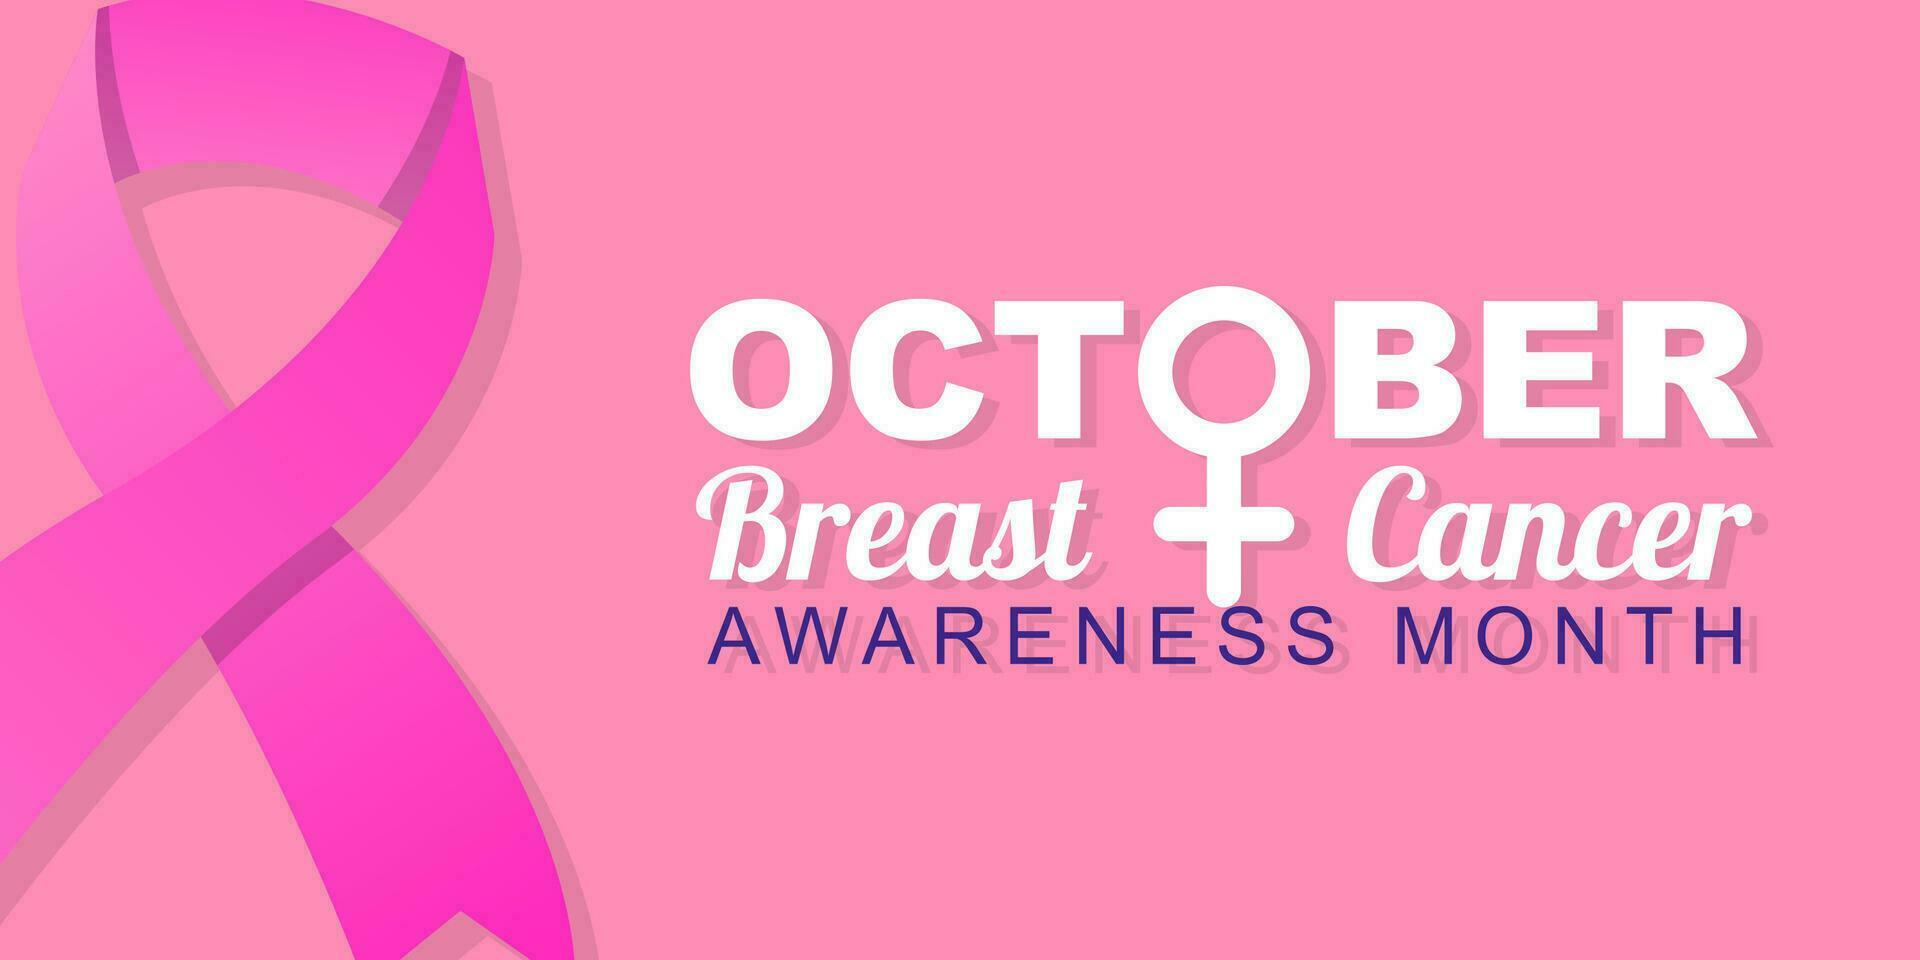 Brust Krebs Bewusstsein Monat ist gefeiert im Oktober. Gruß Poster Design mit Rosa Band und weiblich Brust gestalten rahmen. Vektor Illustration Design